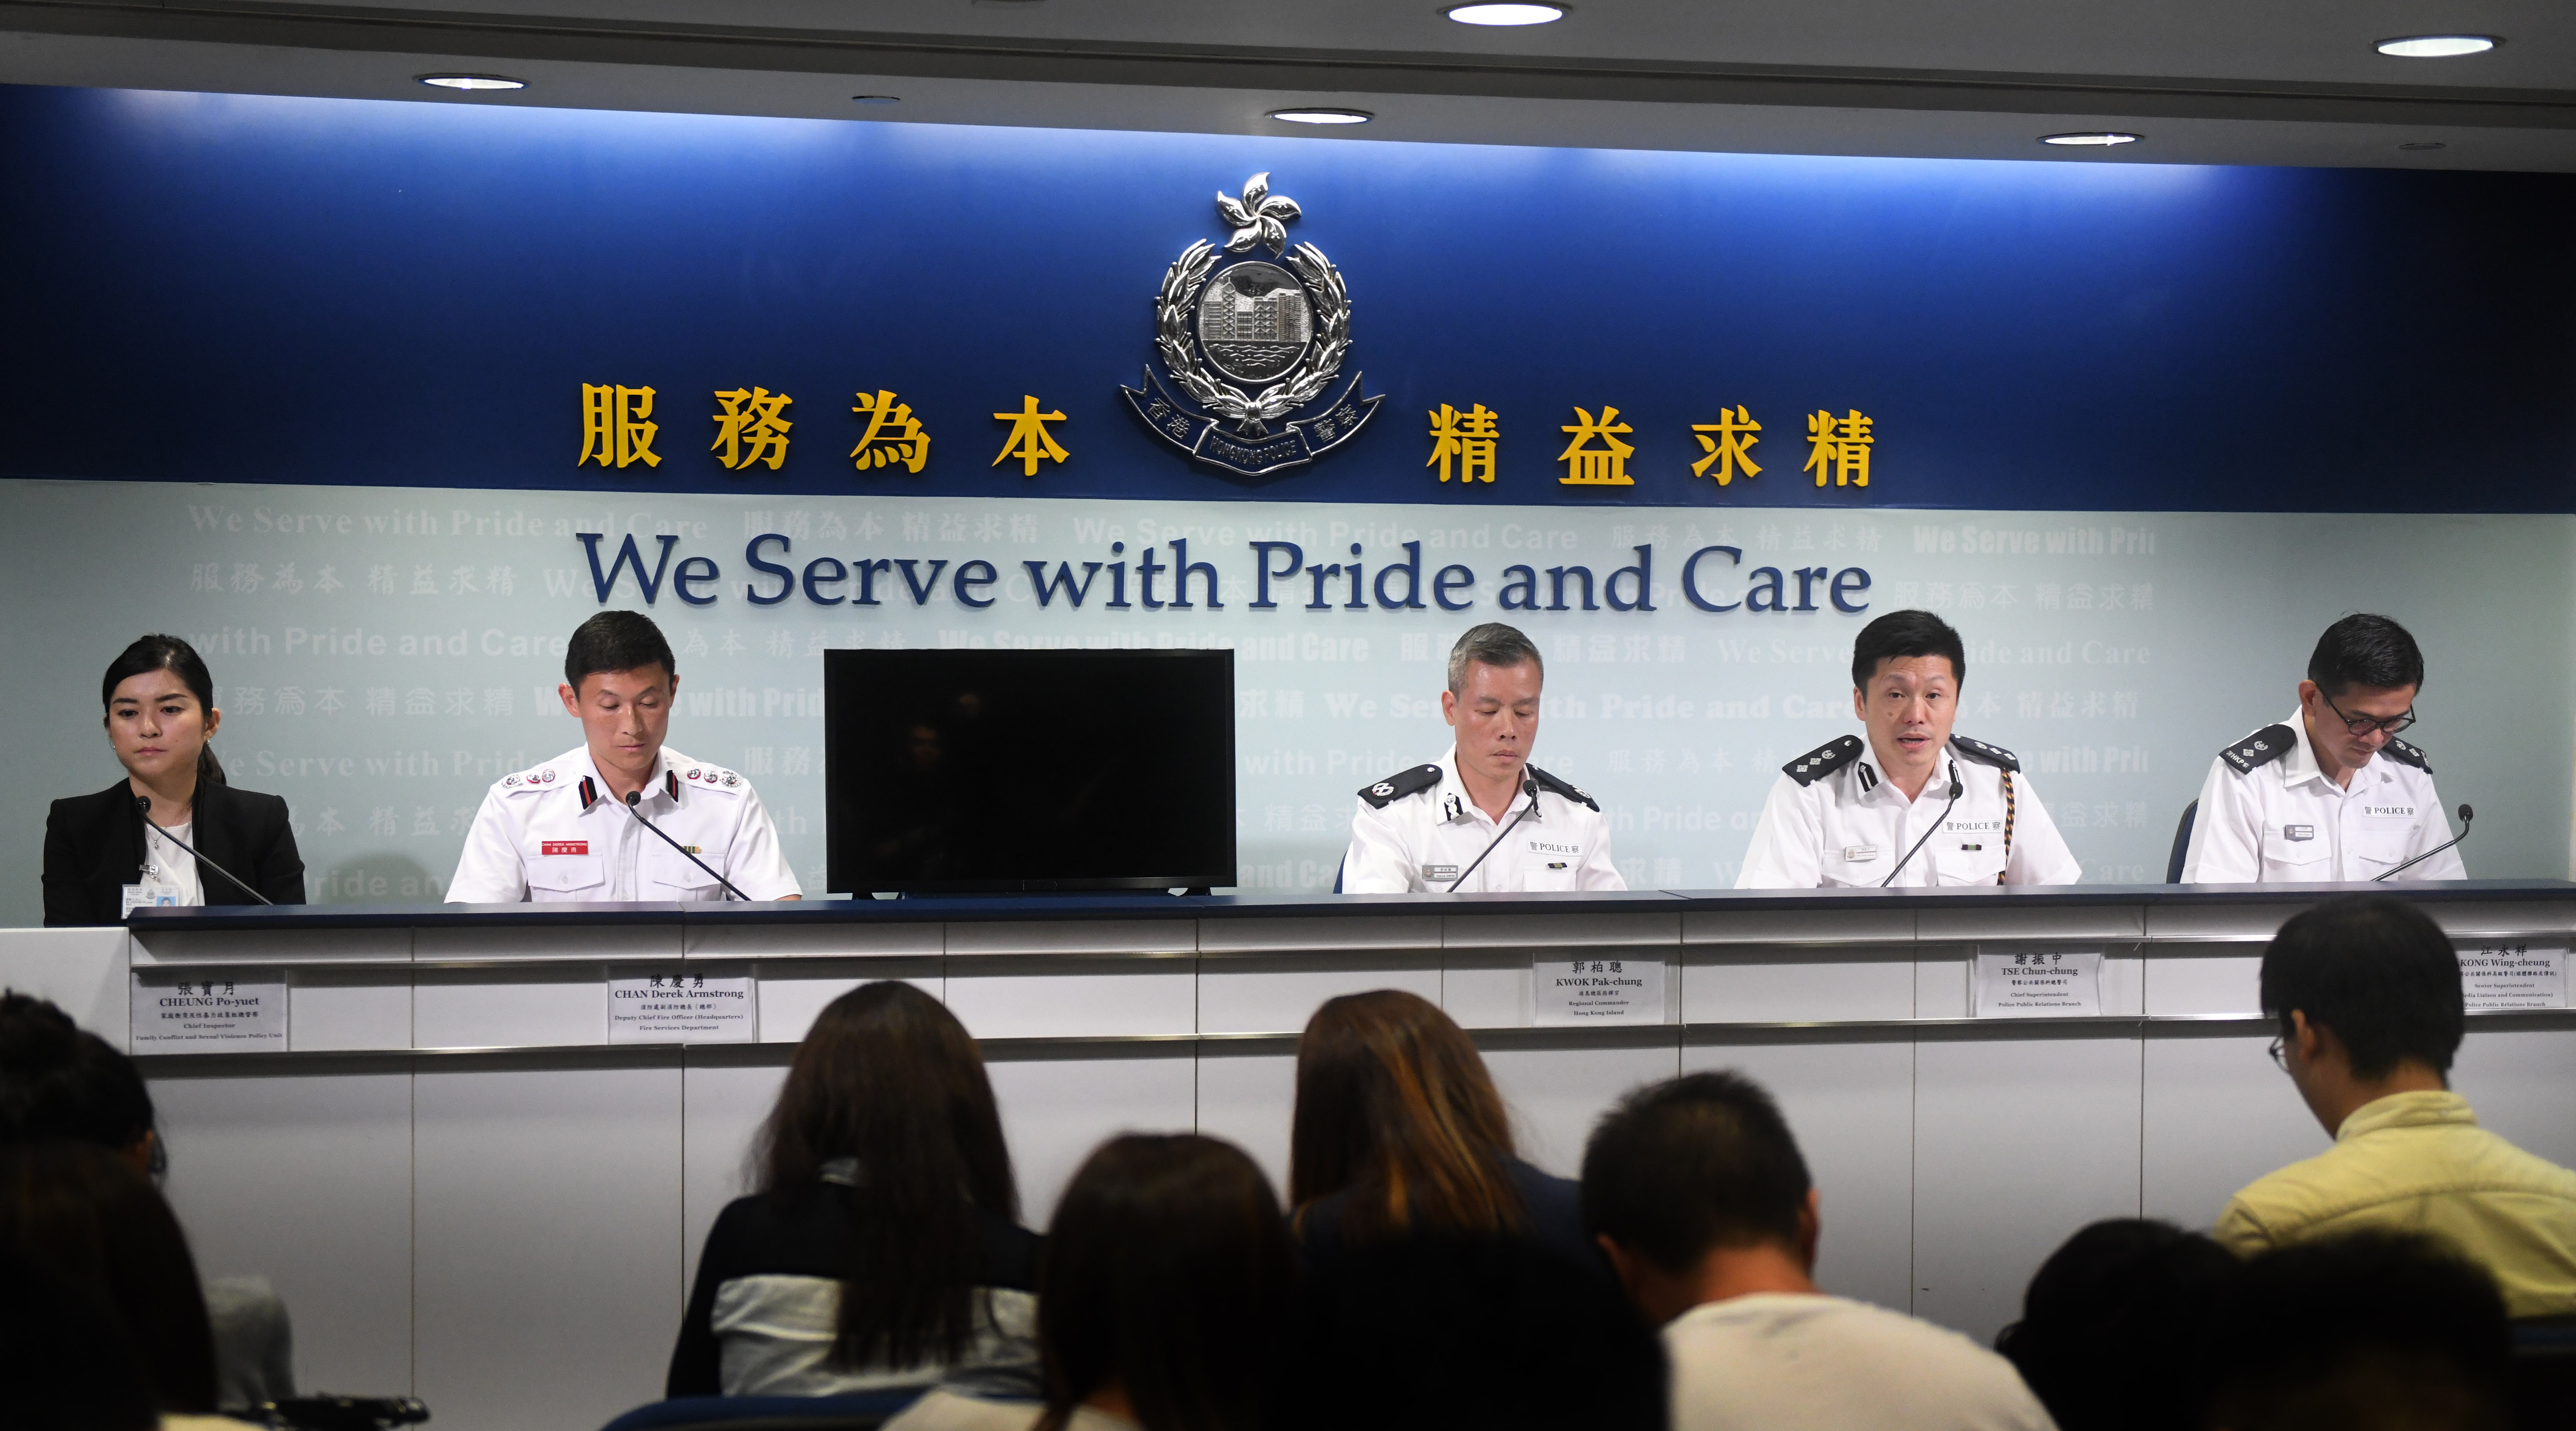 新华社照片,香港,2019年8月30日8月30日,香港特区政府警务处警察公共